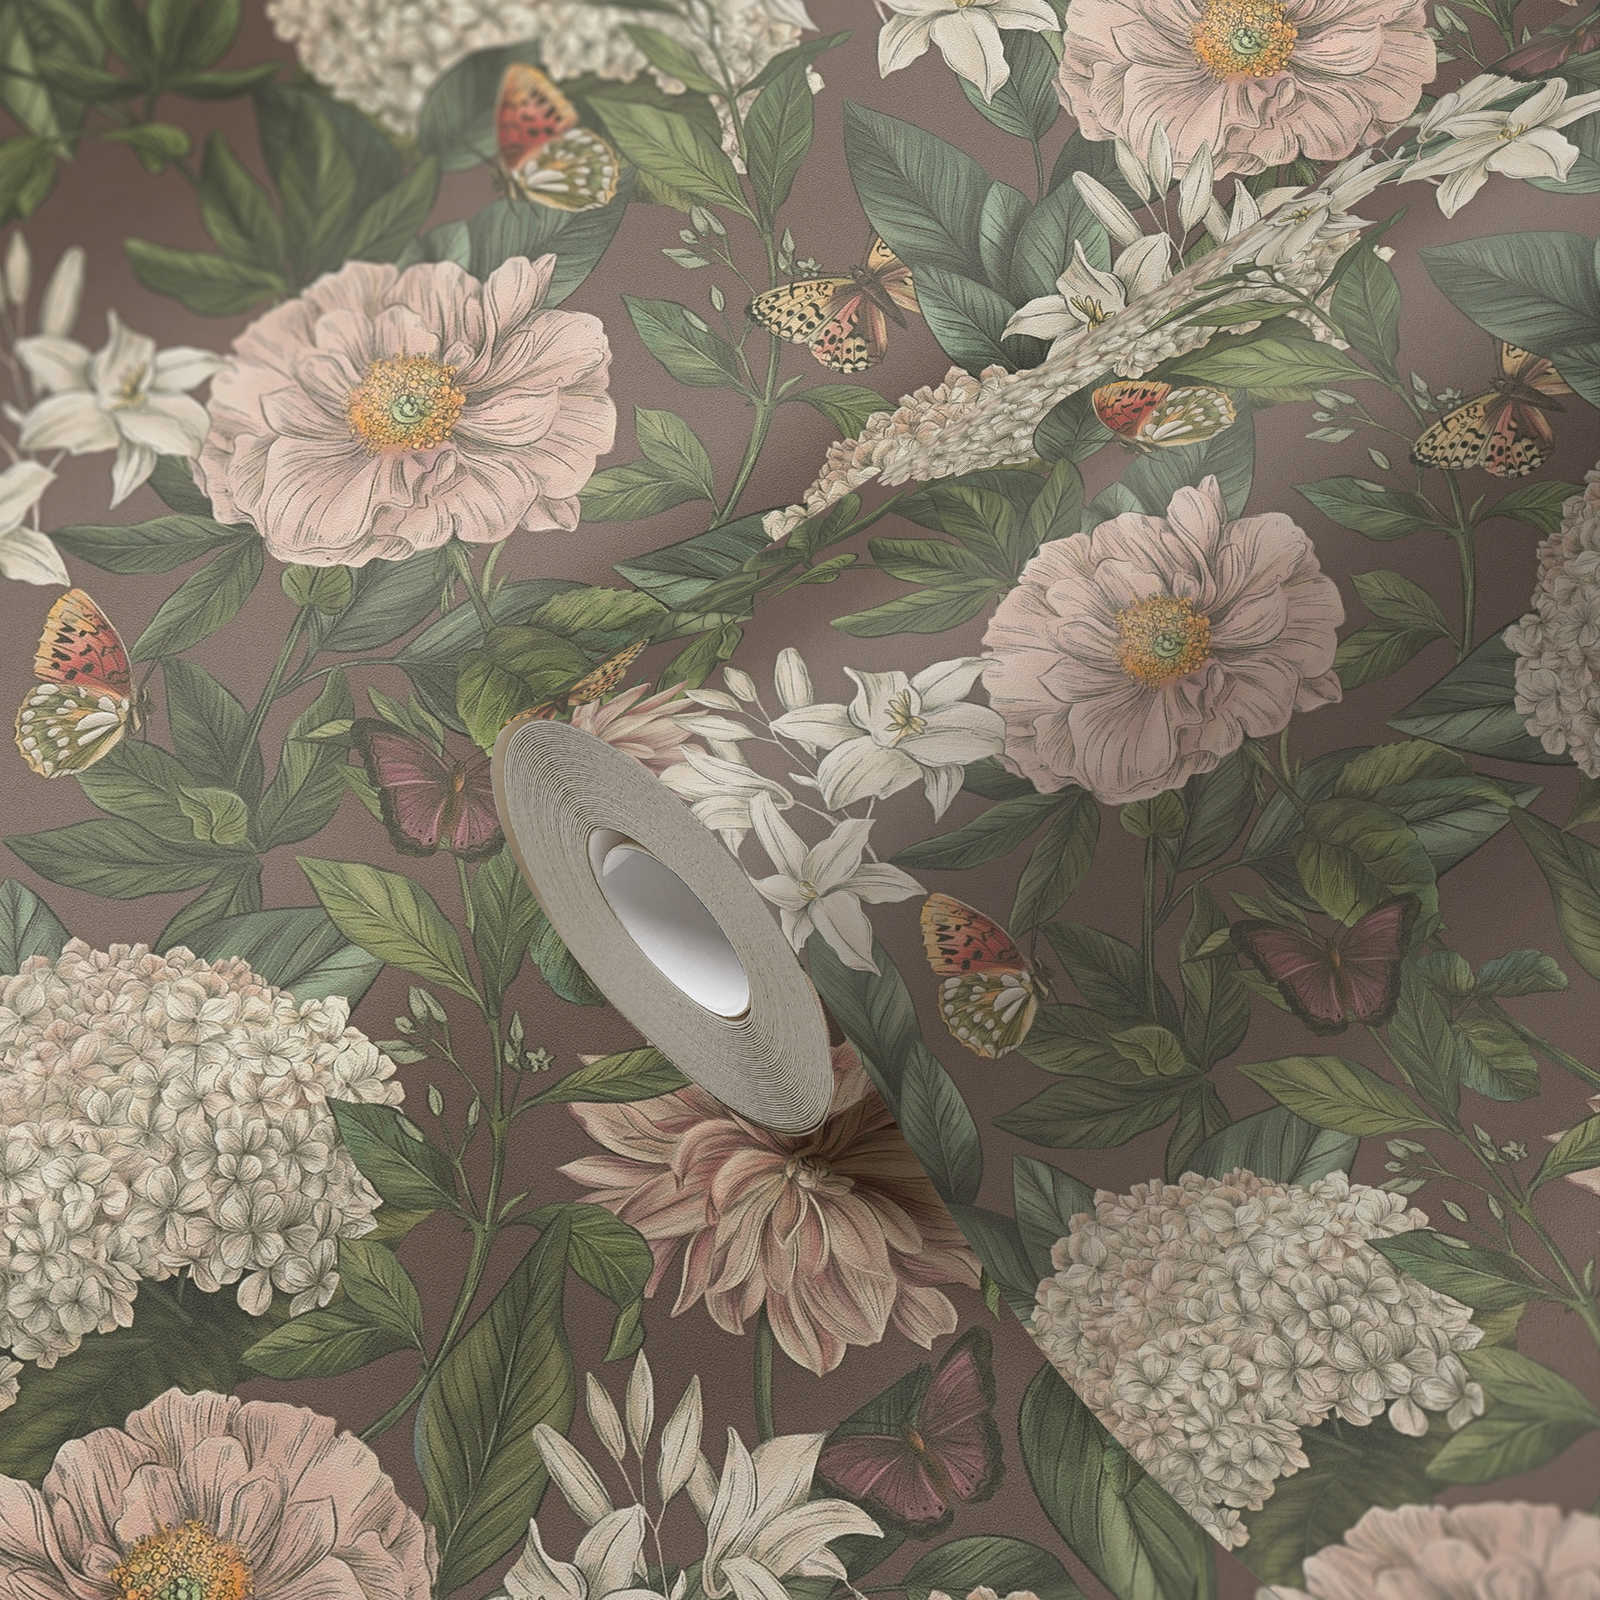             Modern behang met bloemen & vlinders structuur mat - bordeaux, roze, donkergroen
        